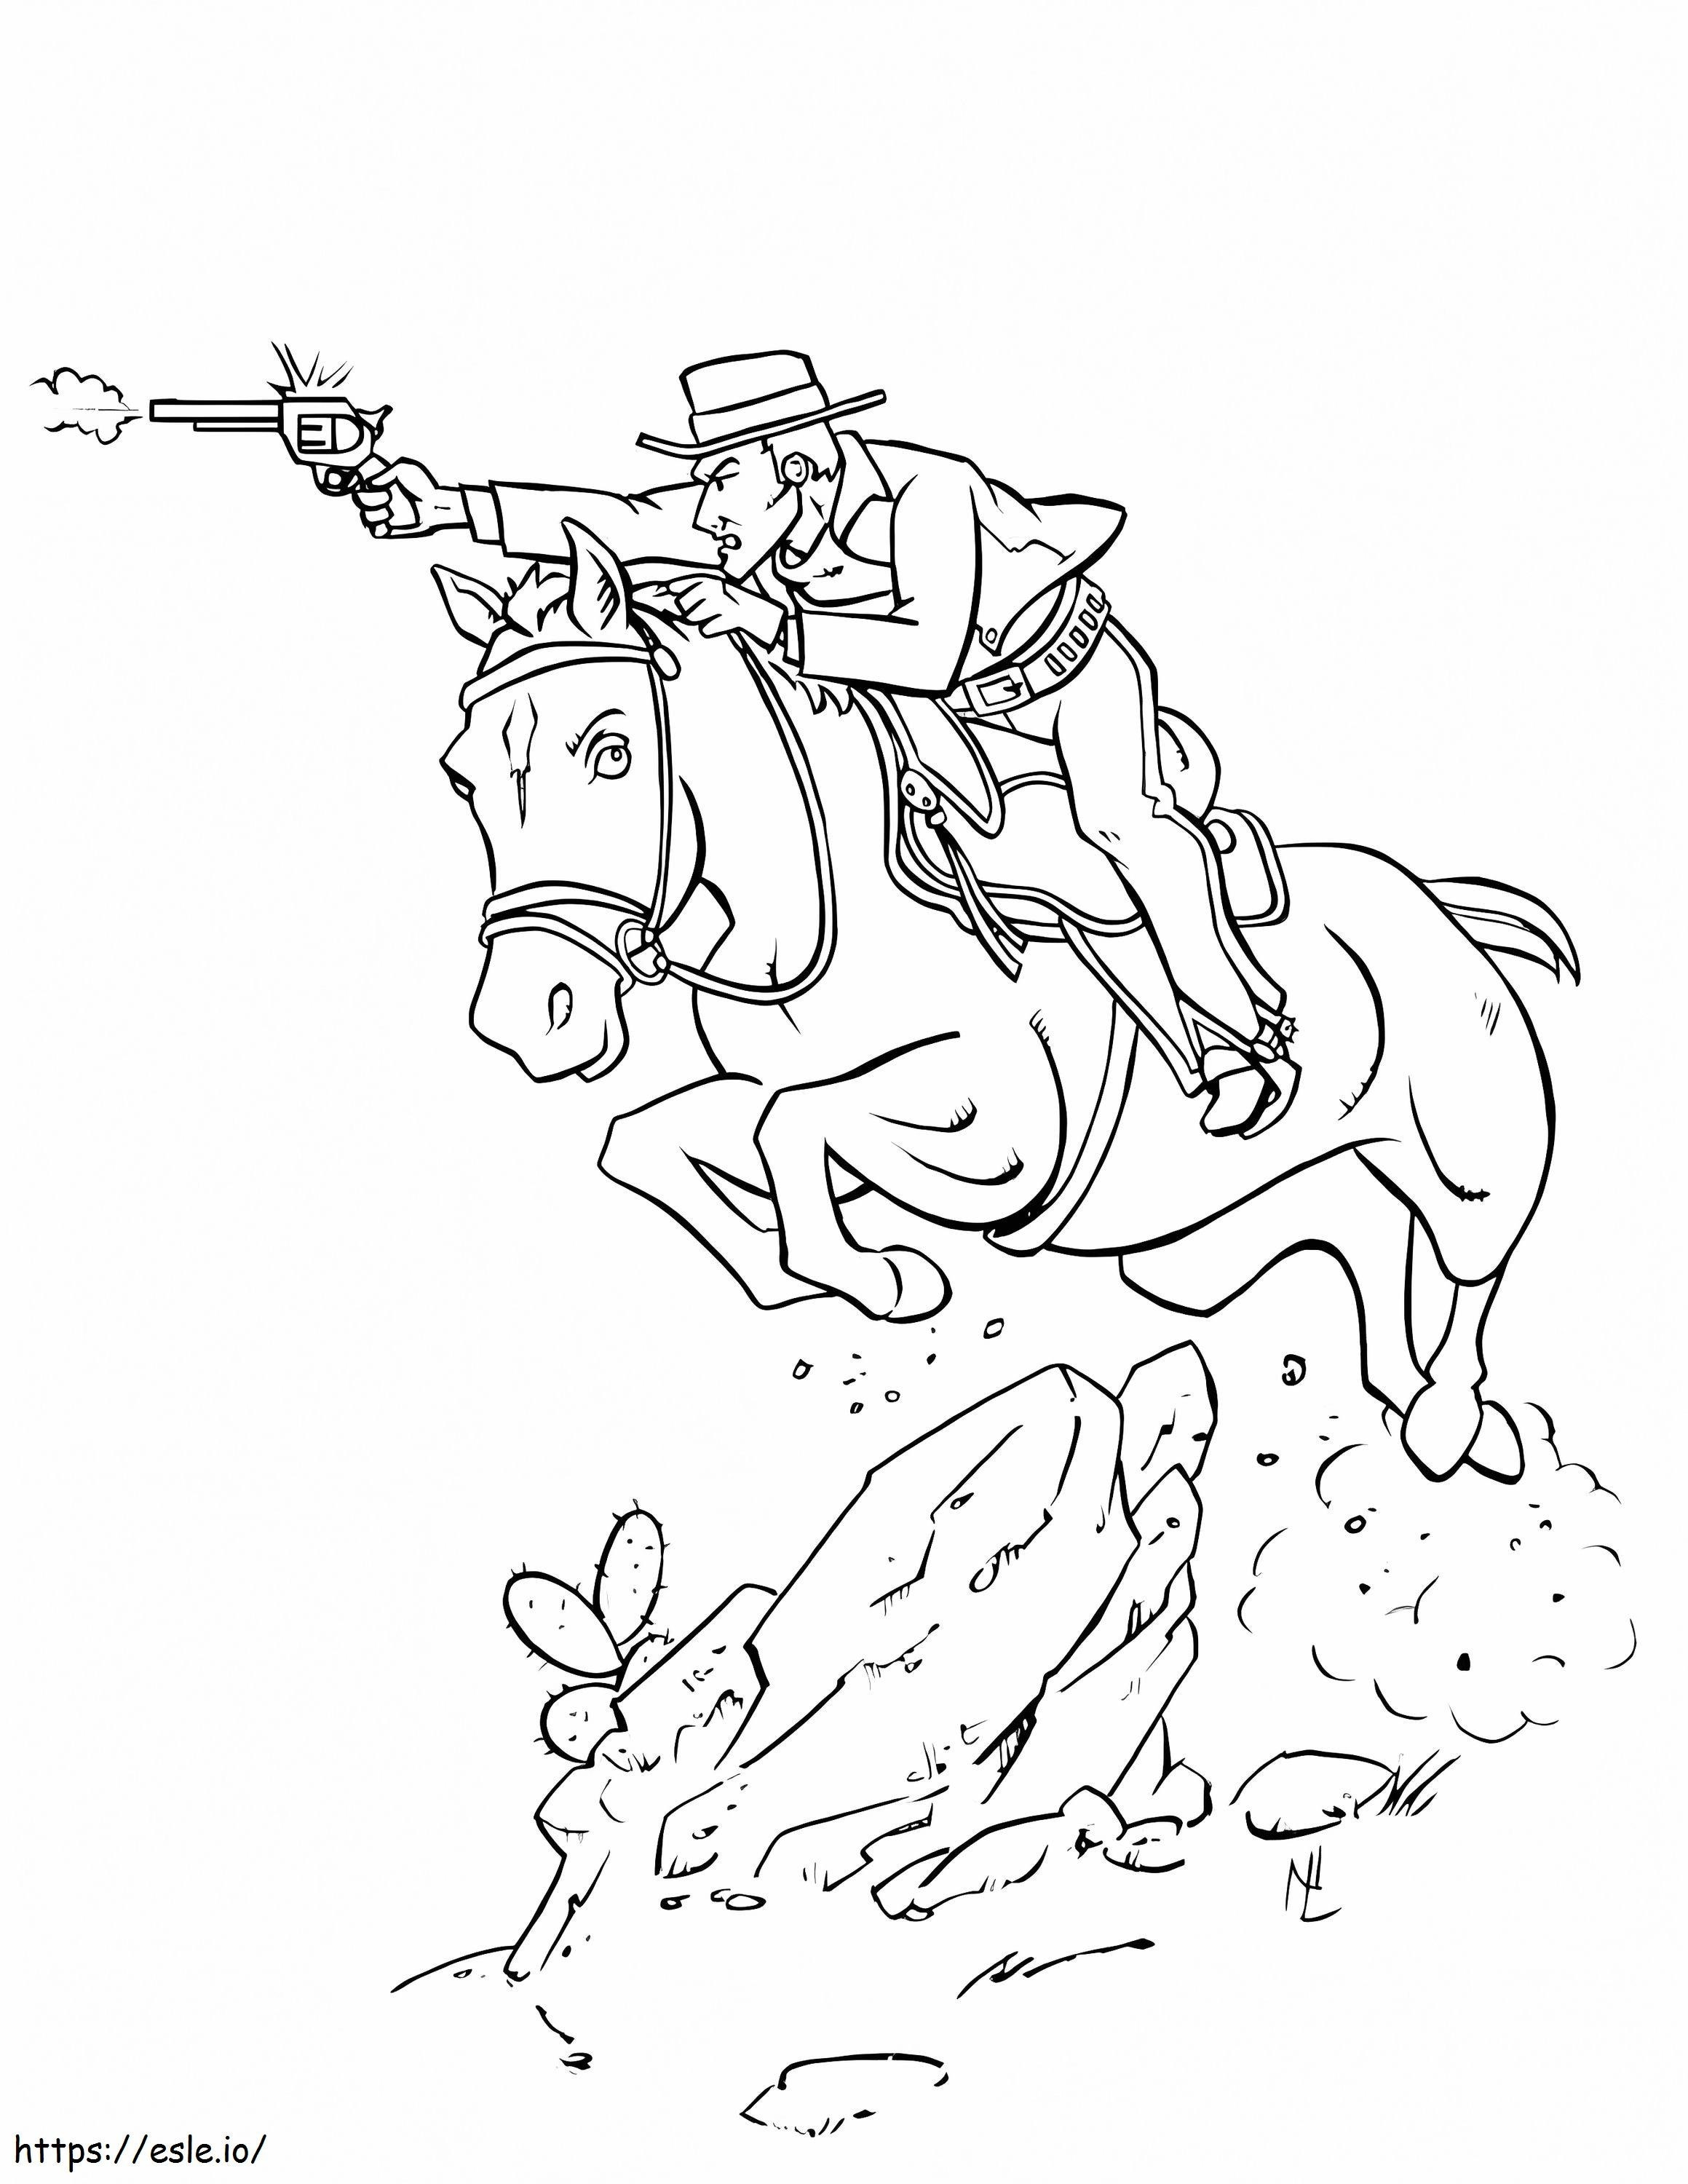 Cowboy andando a cavalo e atirando para colorir